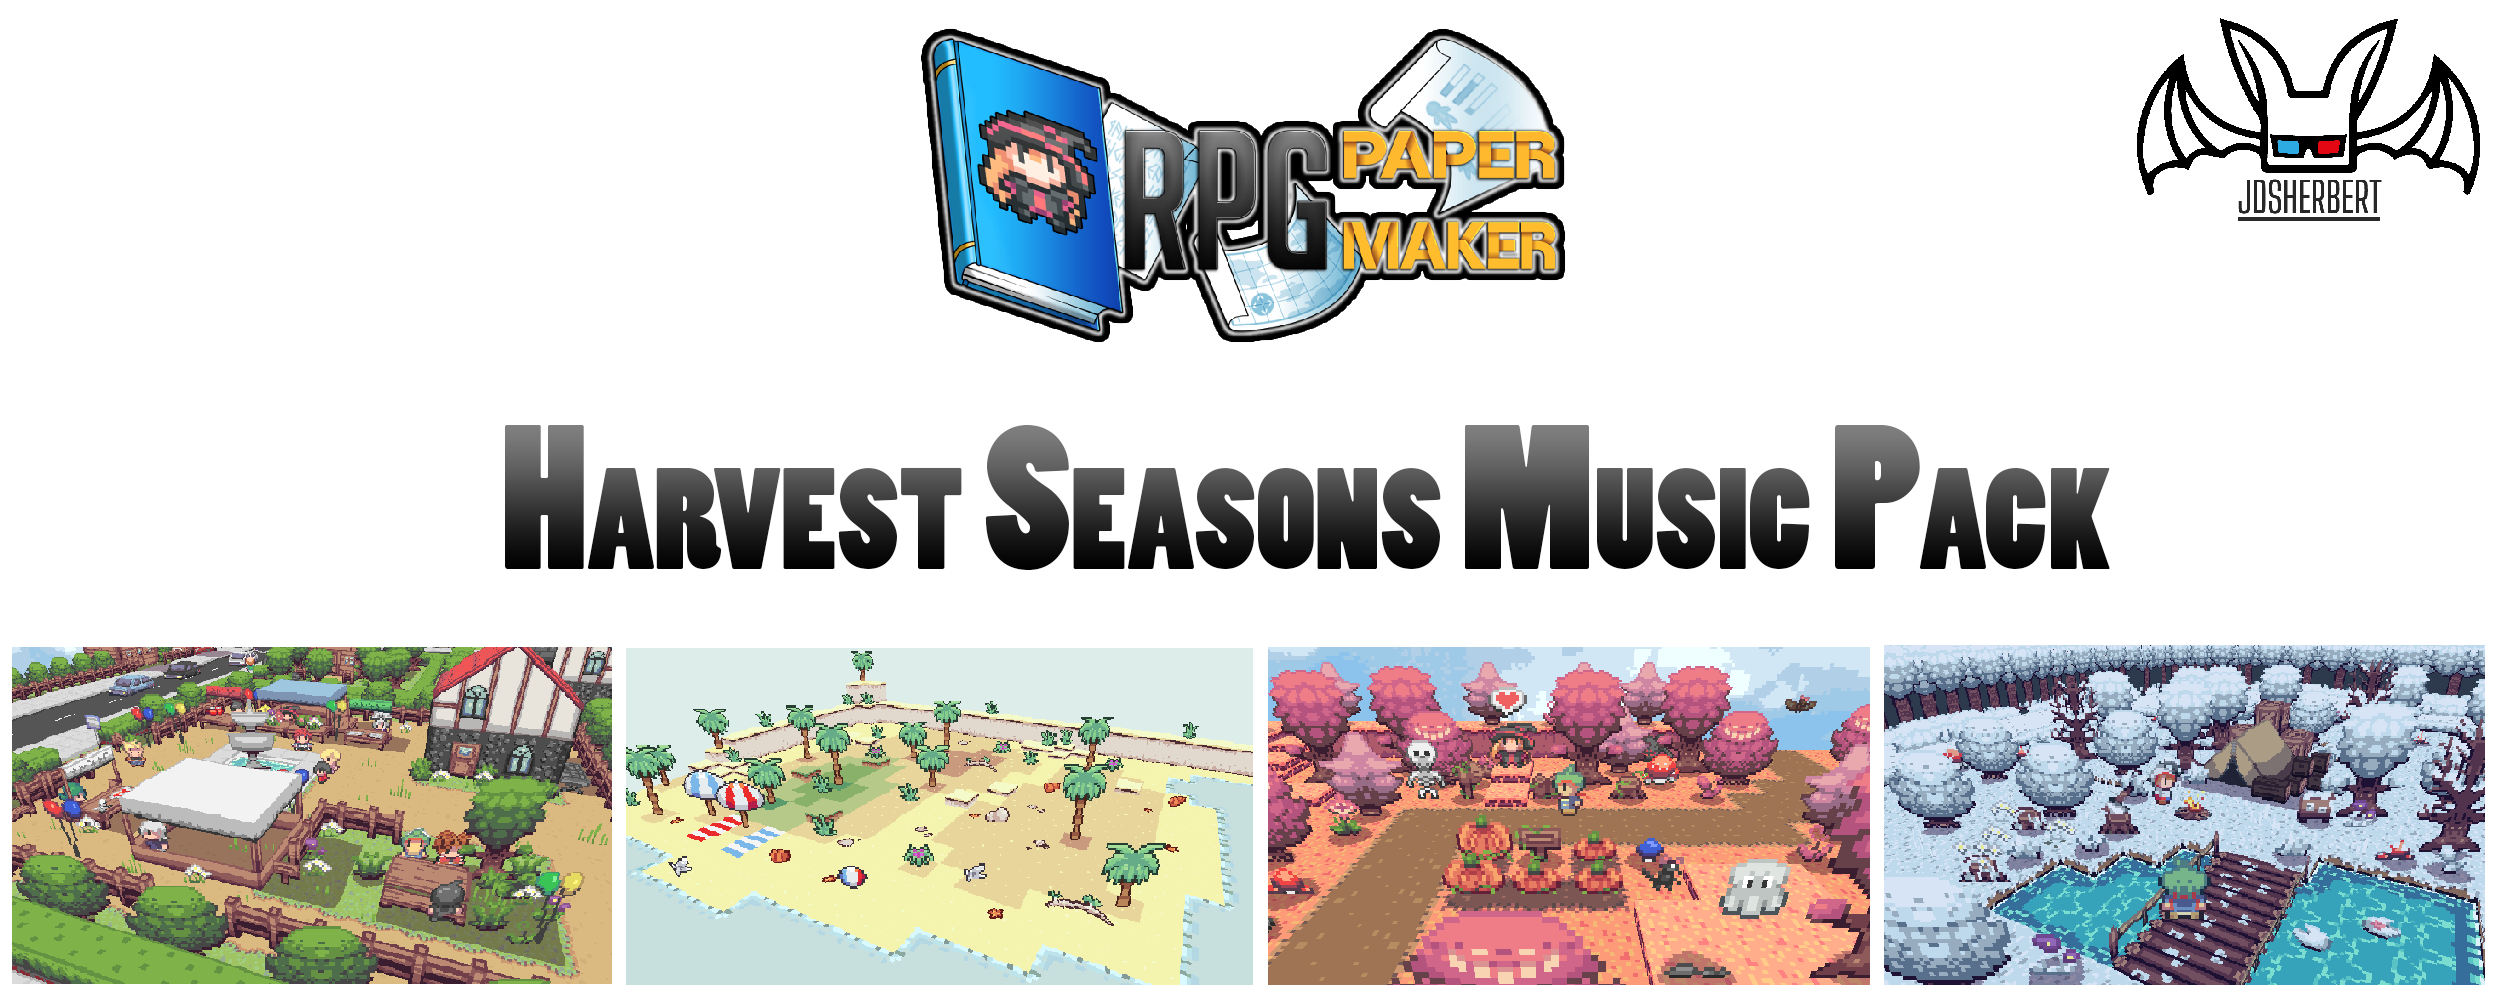 RPG Paper Maker DLC: Harvest Seasons Music Pack